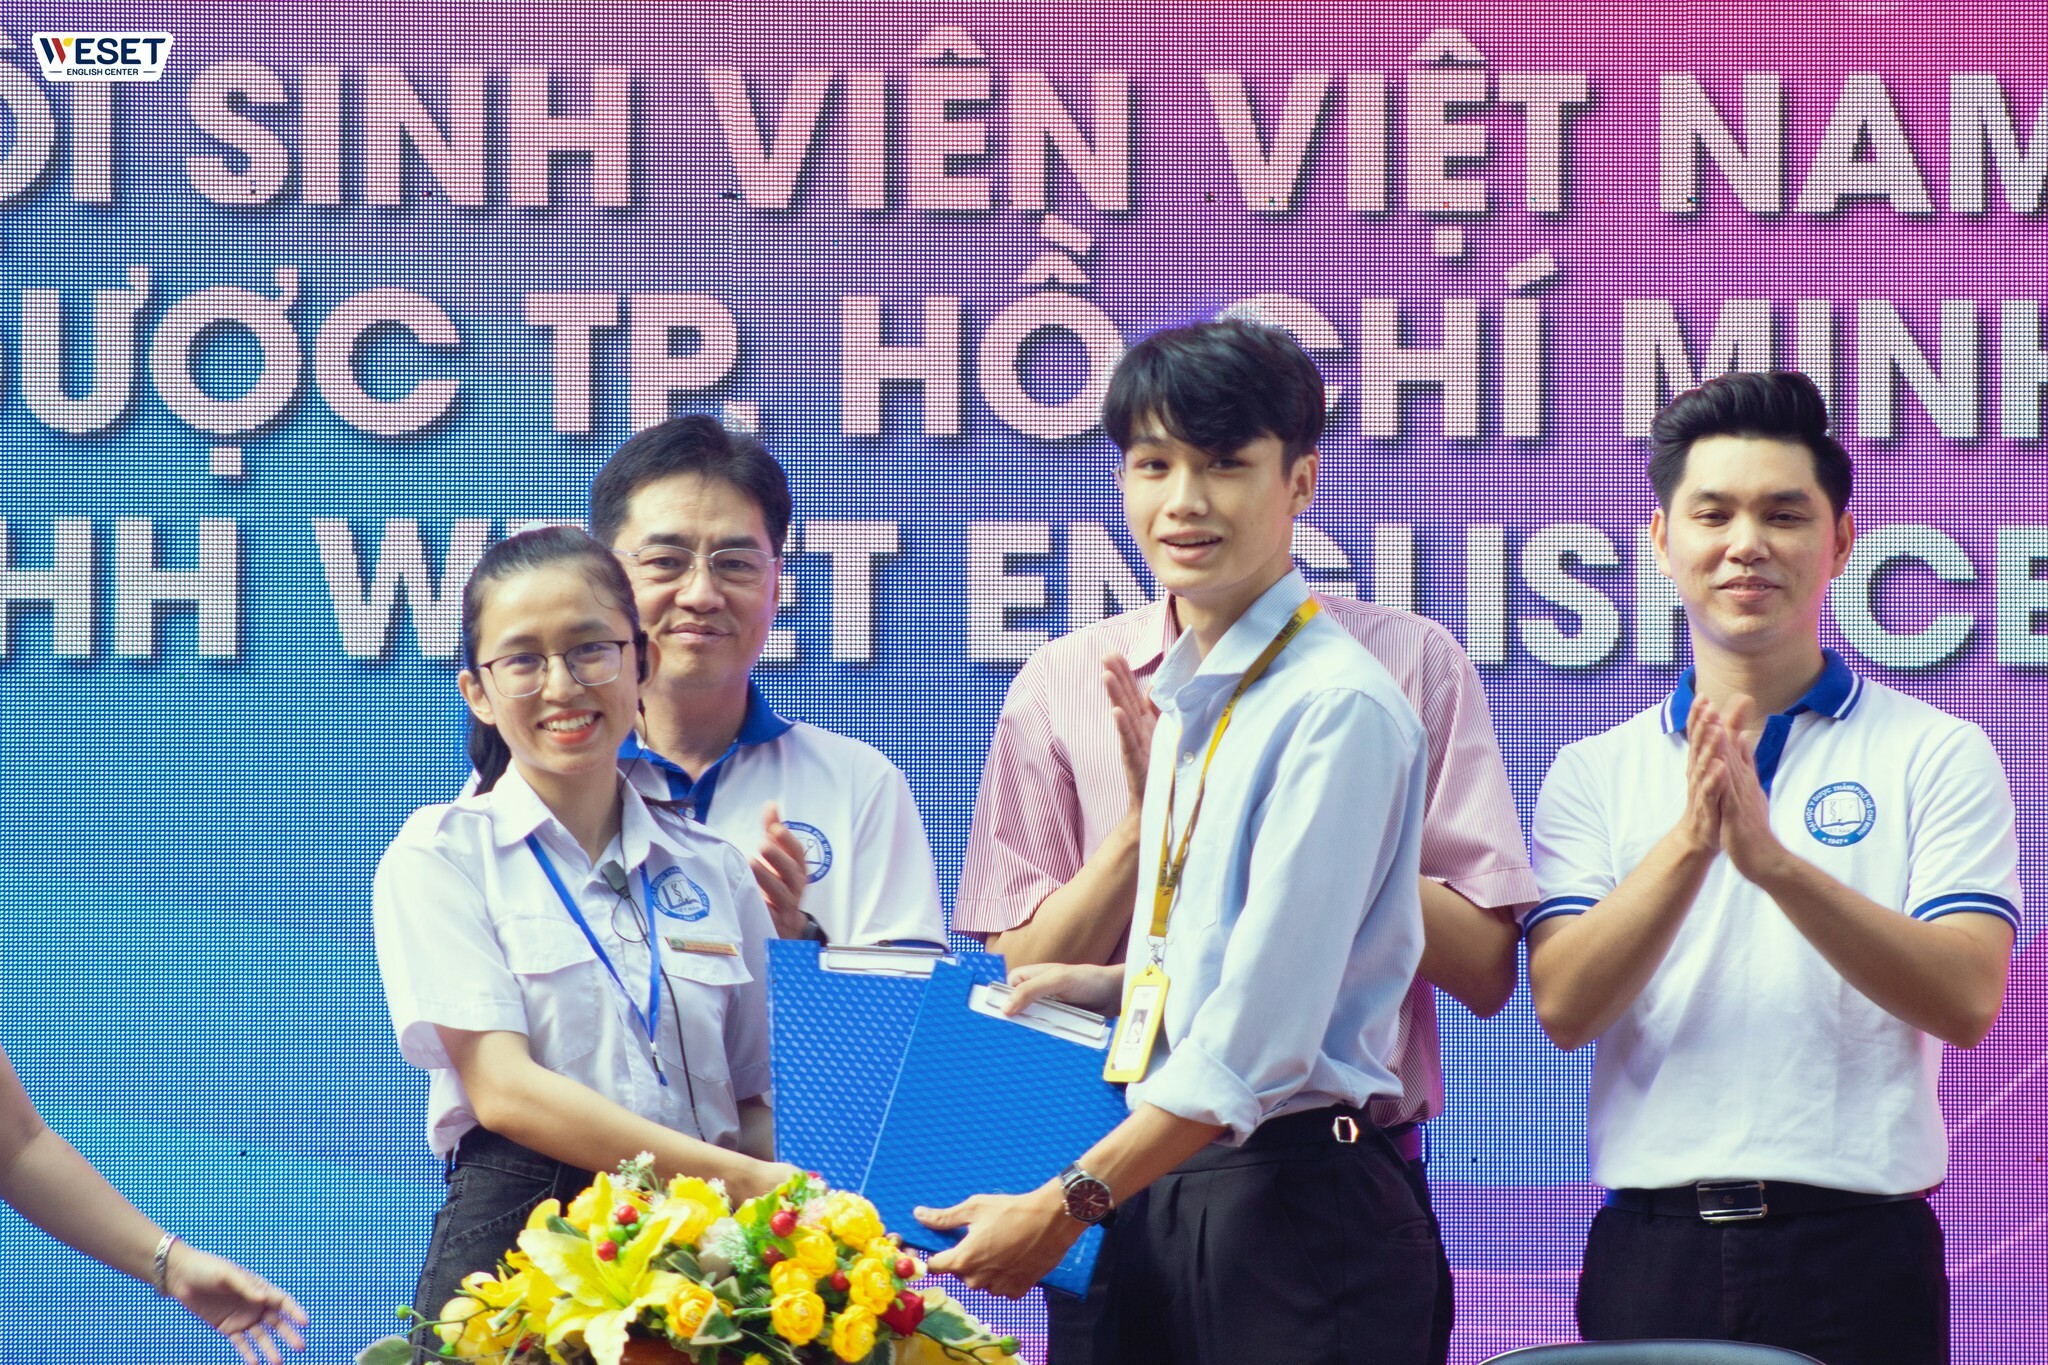 Lễ ký kết giữa WESET với Hội Sinh viên Việt Nam – Trường Đại học Y Dược TP.HCM